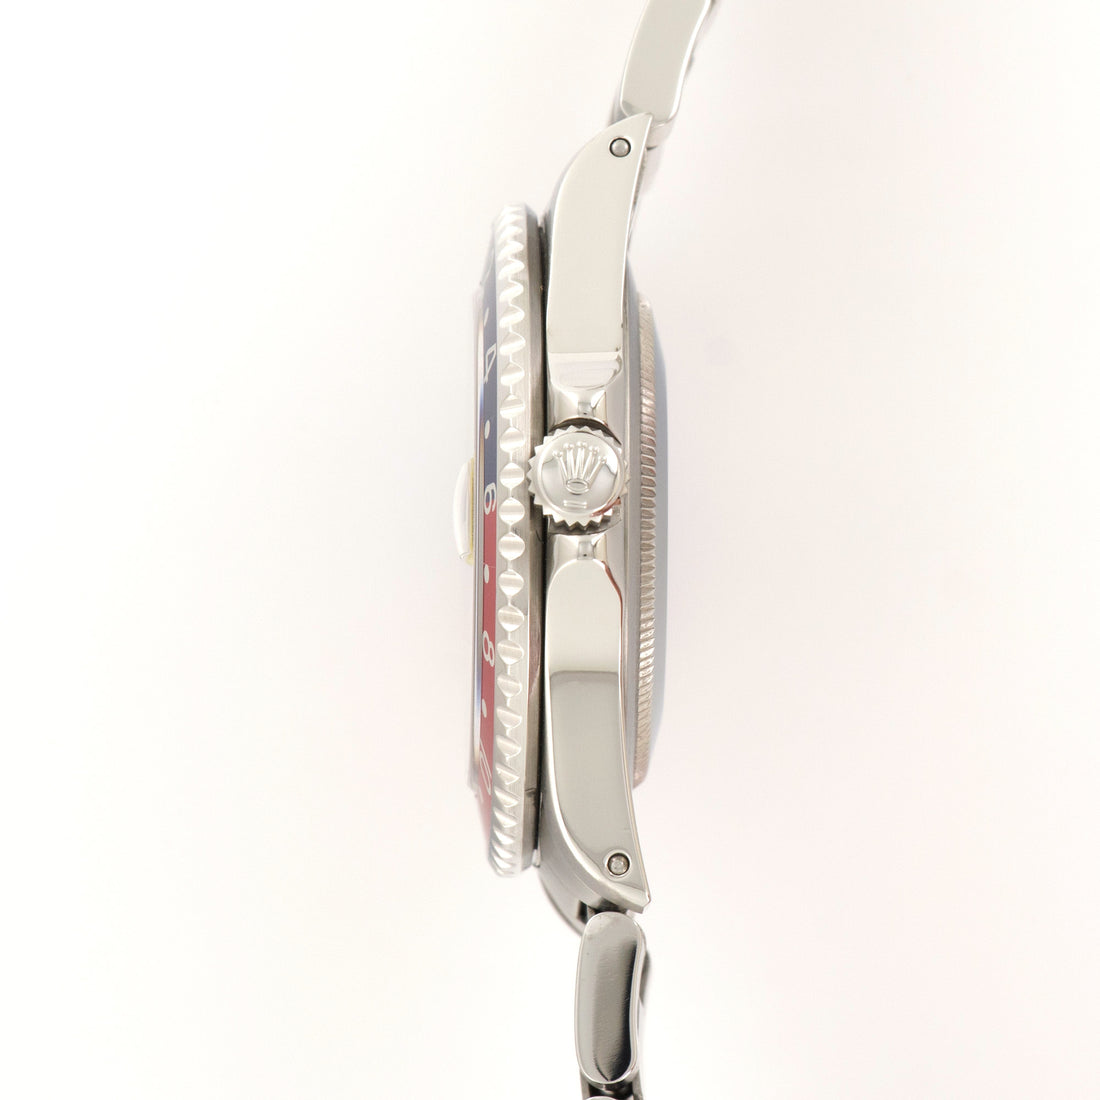 Rolex GMT-Master Pepsi Watch Ref. 16700